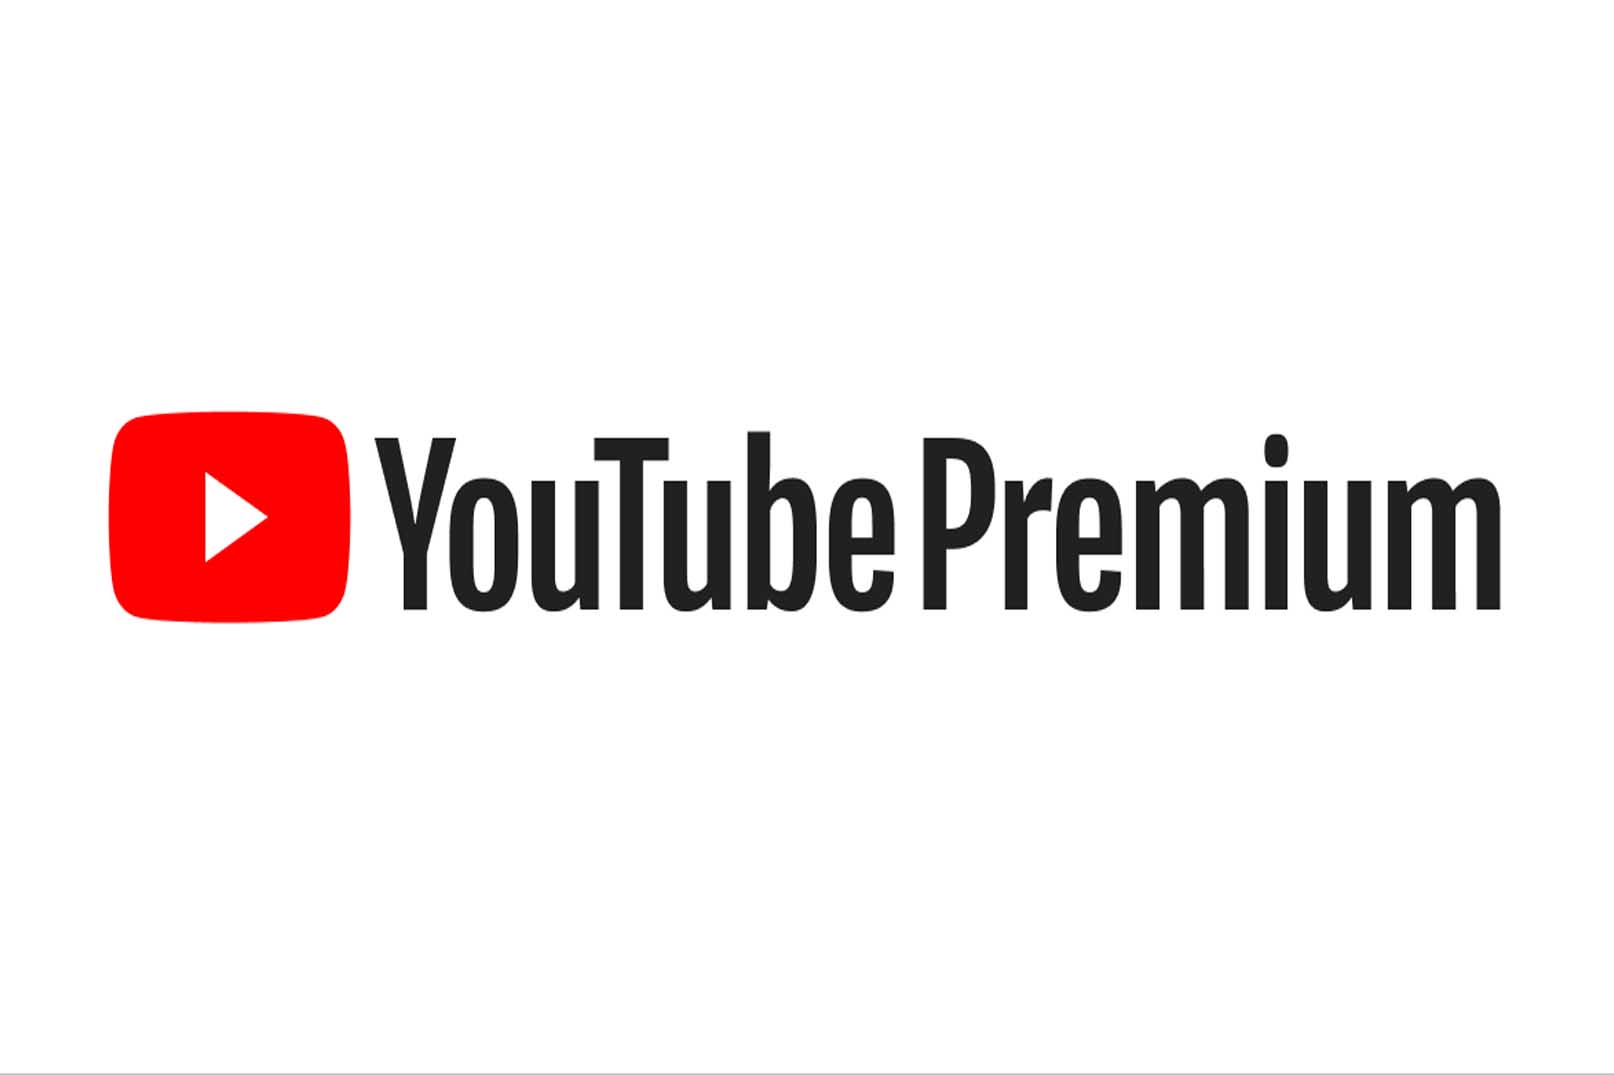 Cara Aktivasi Youtube Premium Gratis, Mudah dan Cepat